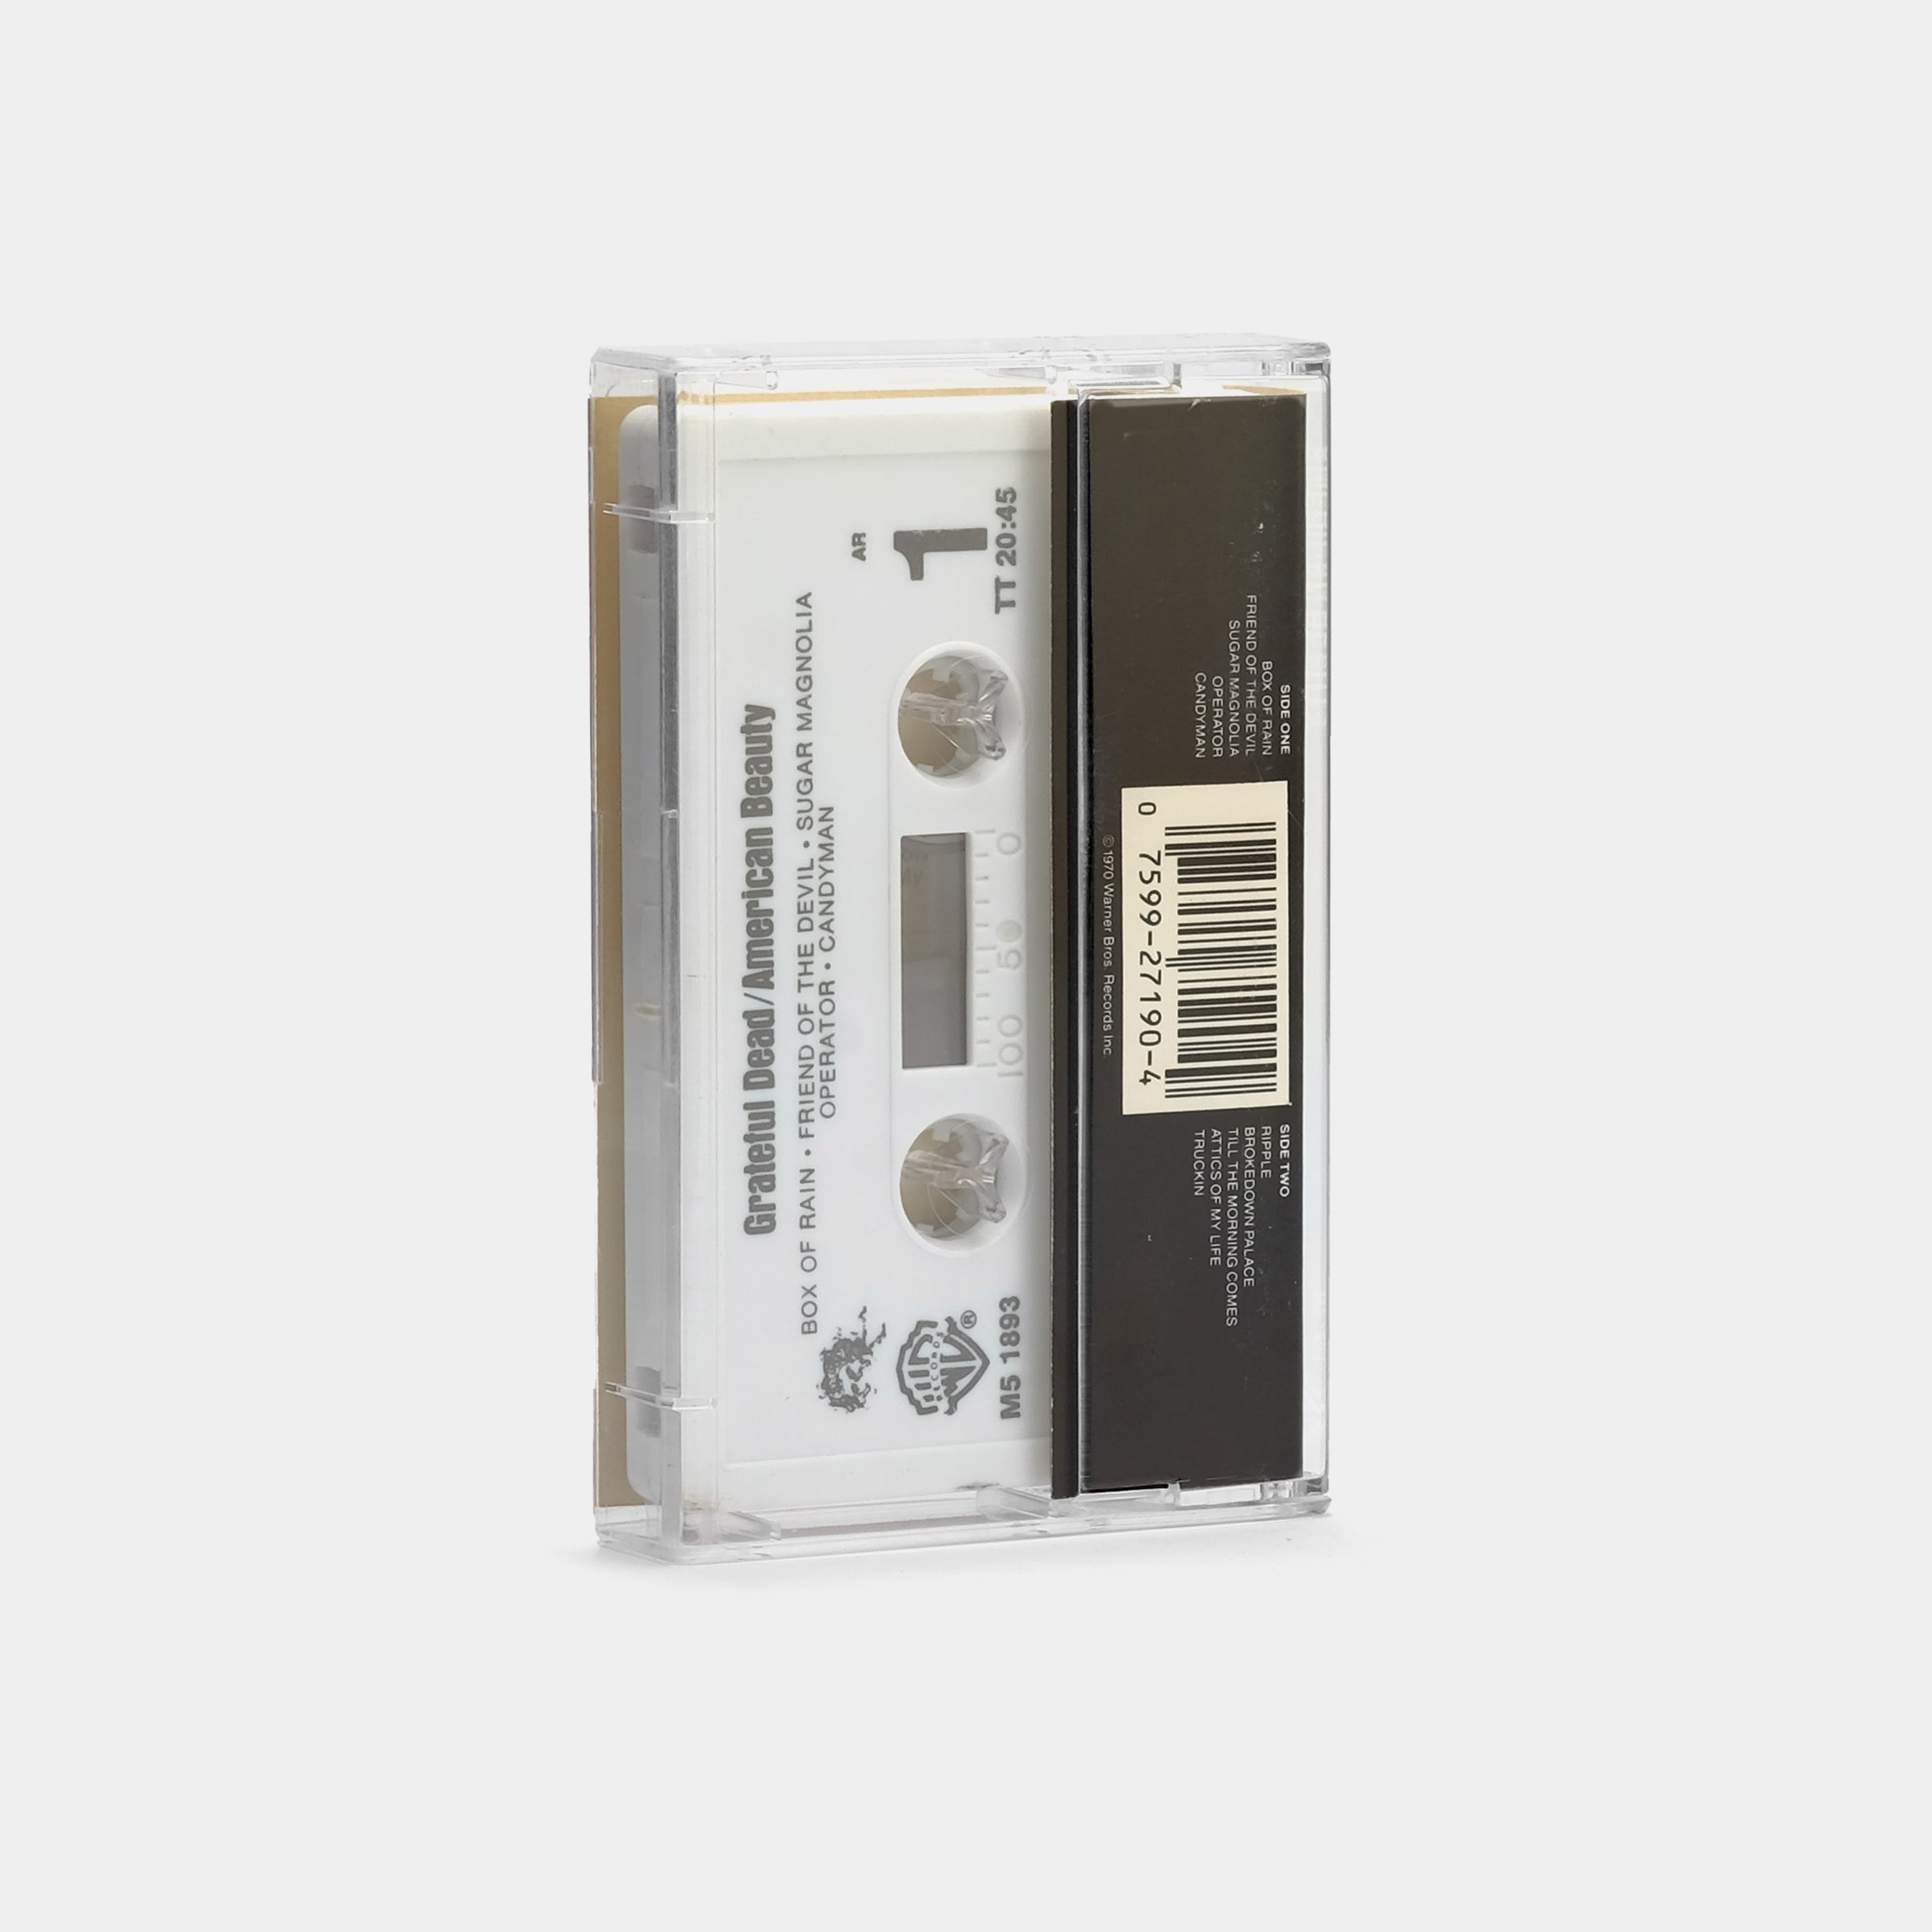 Grateful Dead - American Beauty Cassette Tape